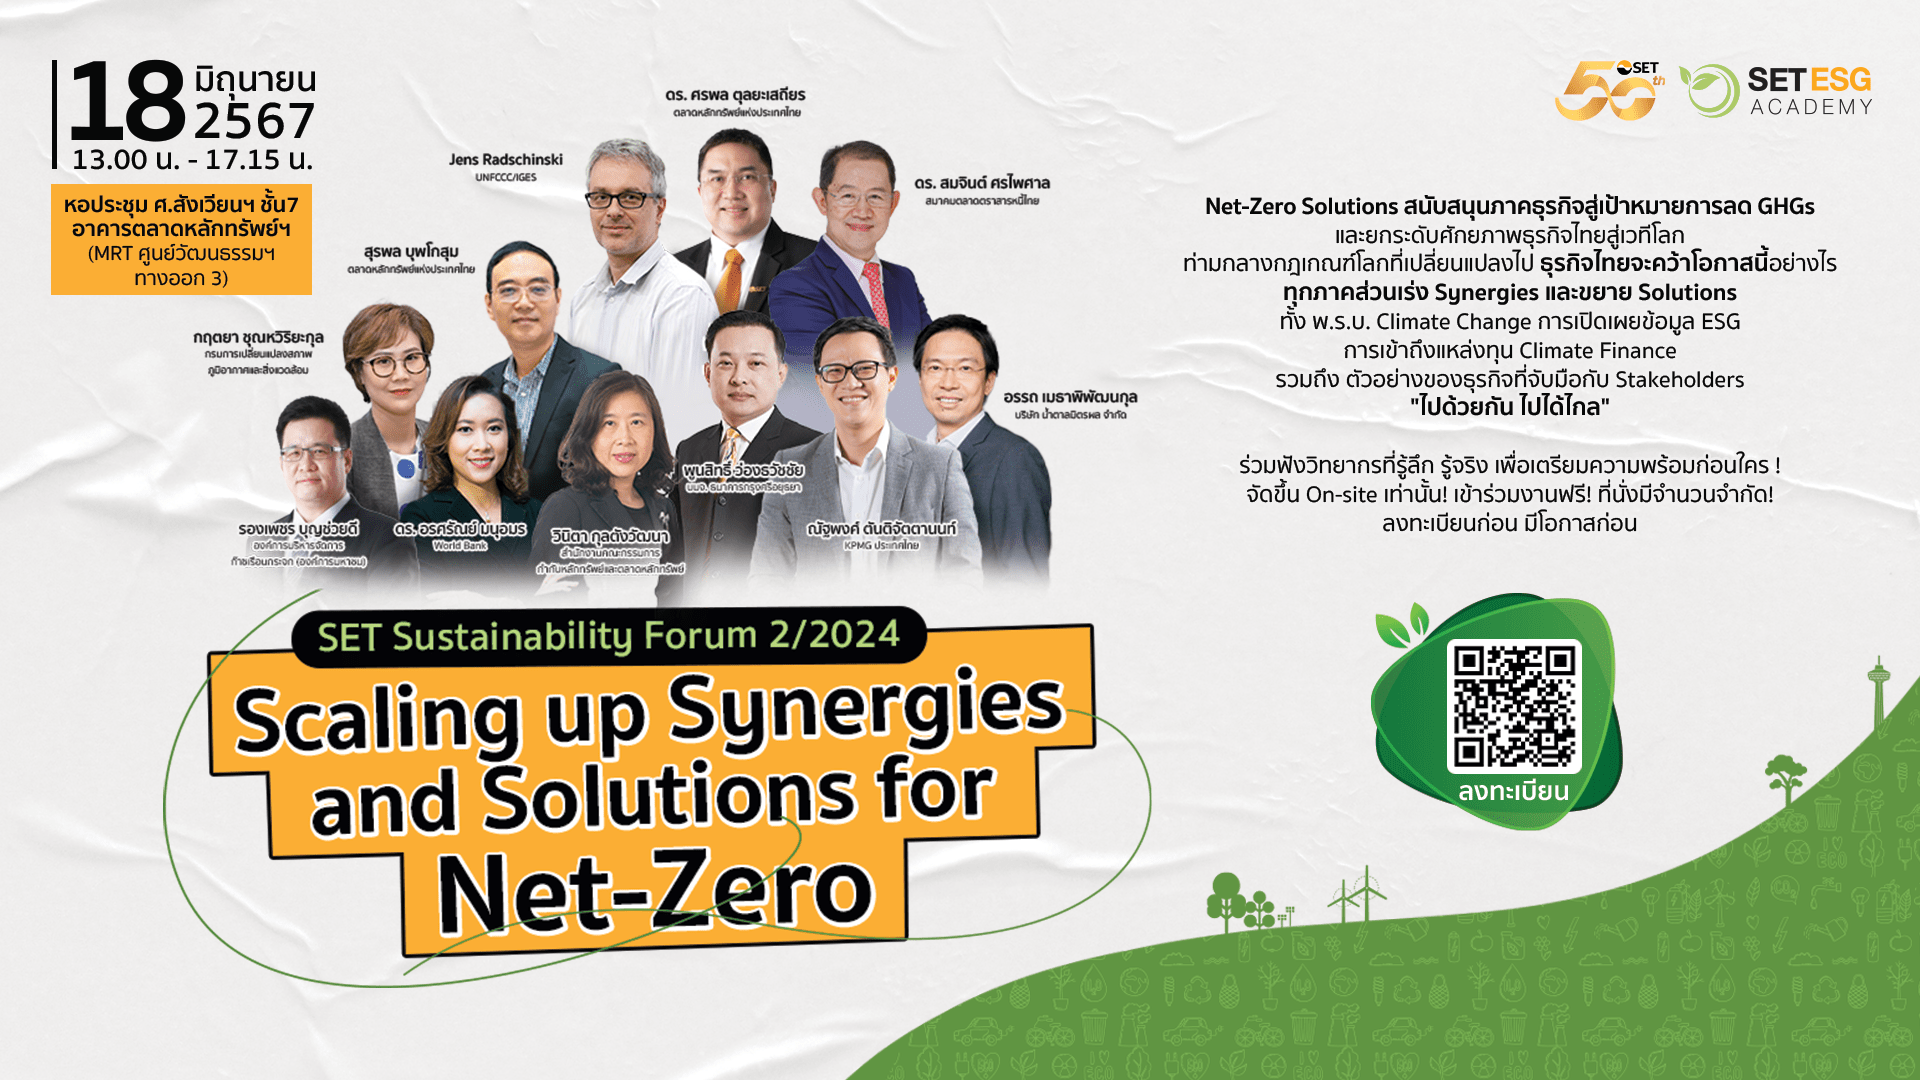 ตลาดหลักทรัพย์ฯ ชวนเข้าร่วมสัมมนา “SET Sustainability Forum 2/2024: Scaling up Synergies and Solutions for Net-Zero” 18 มิ.ย. นี้